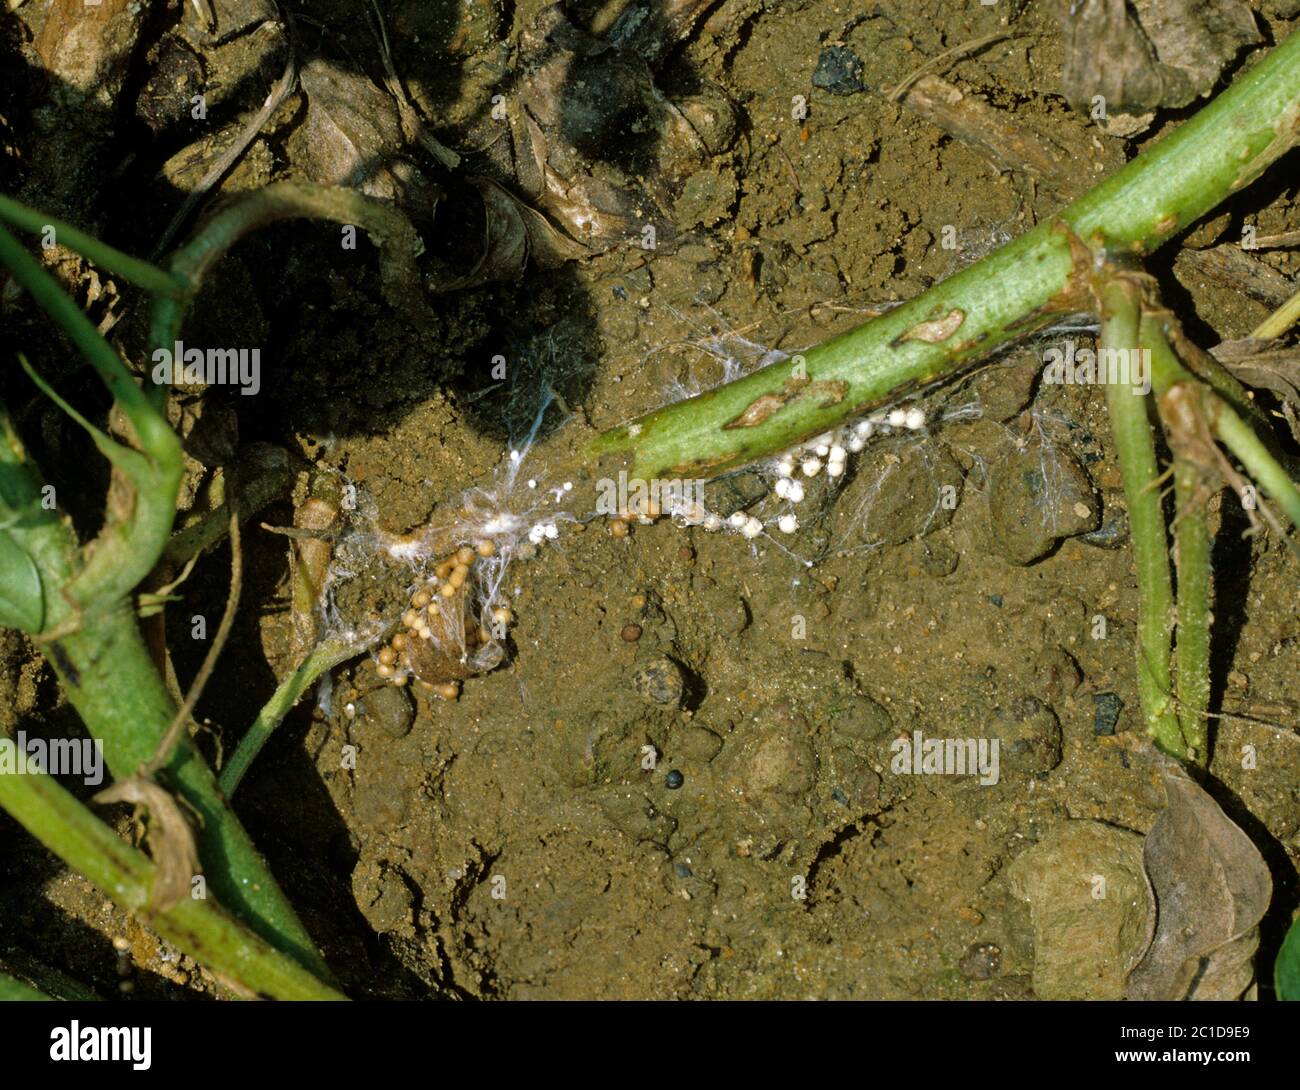 Weißer Schimmel (Athelia rolfsii) Pilzkrankheit Sklerotien um den Boden und die Basis einer Erdnuss (Arachis hypogea) Pflanze, USA, Mai Stockfoto